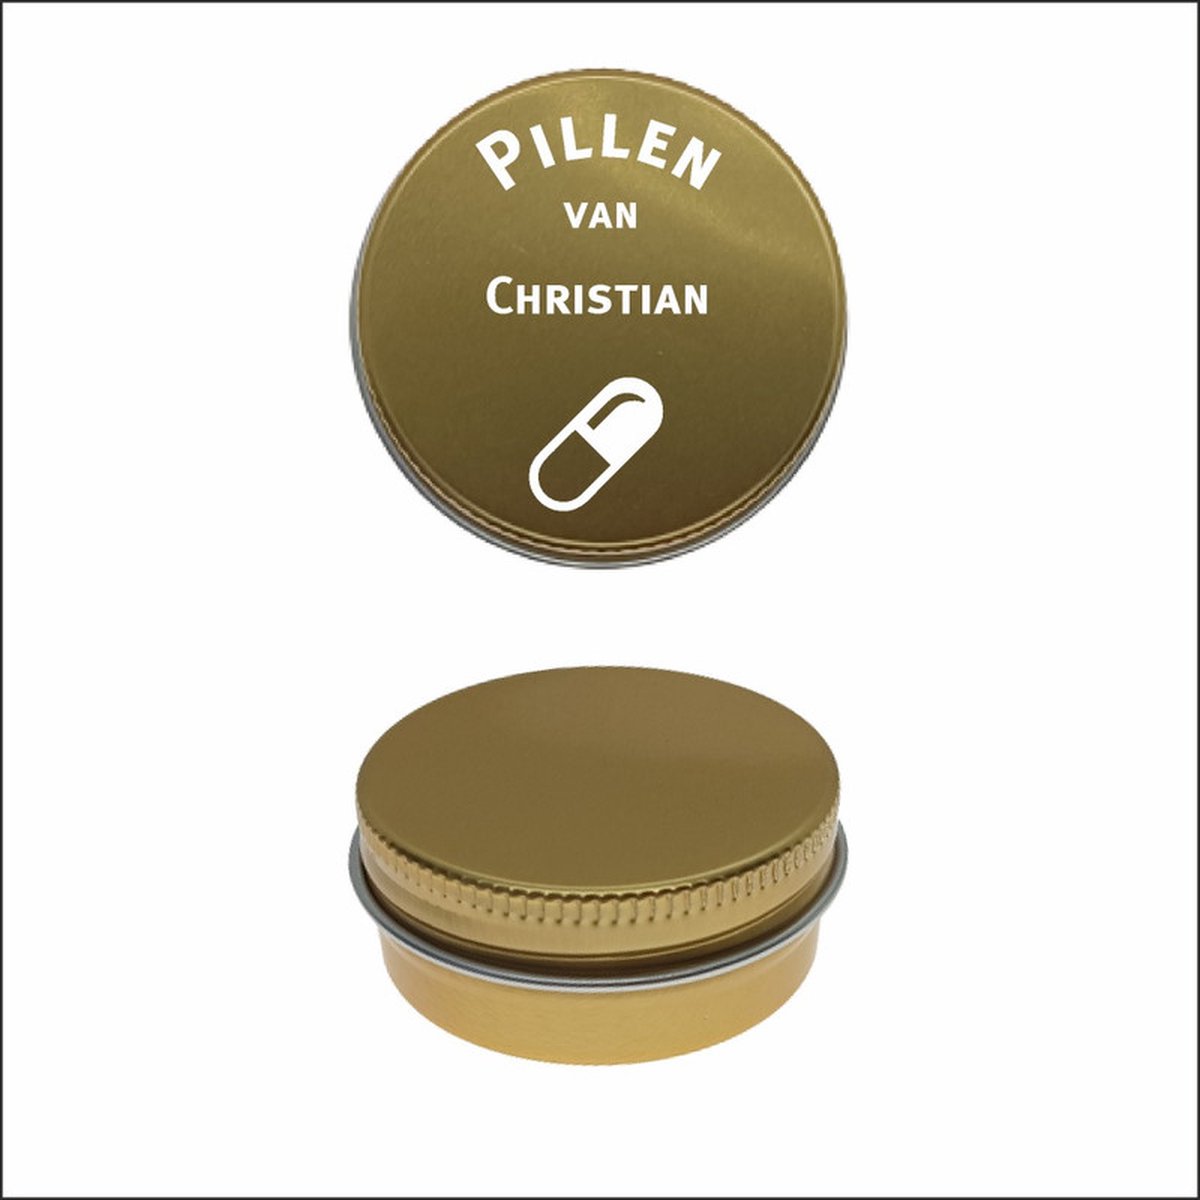 Pillen Blikje Met Naam Gravering - Christian